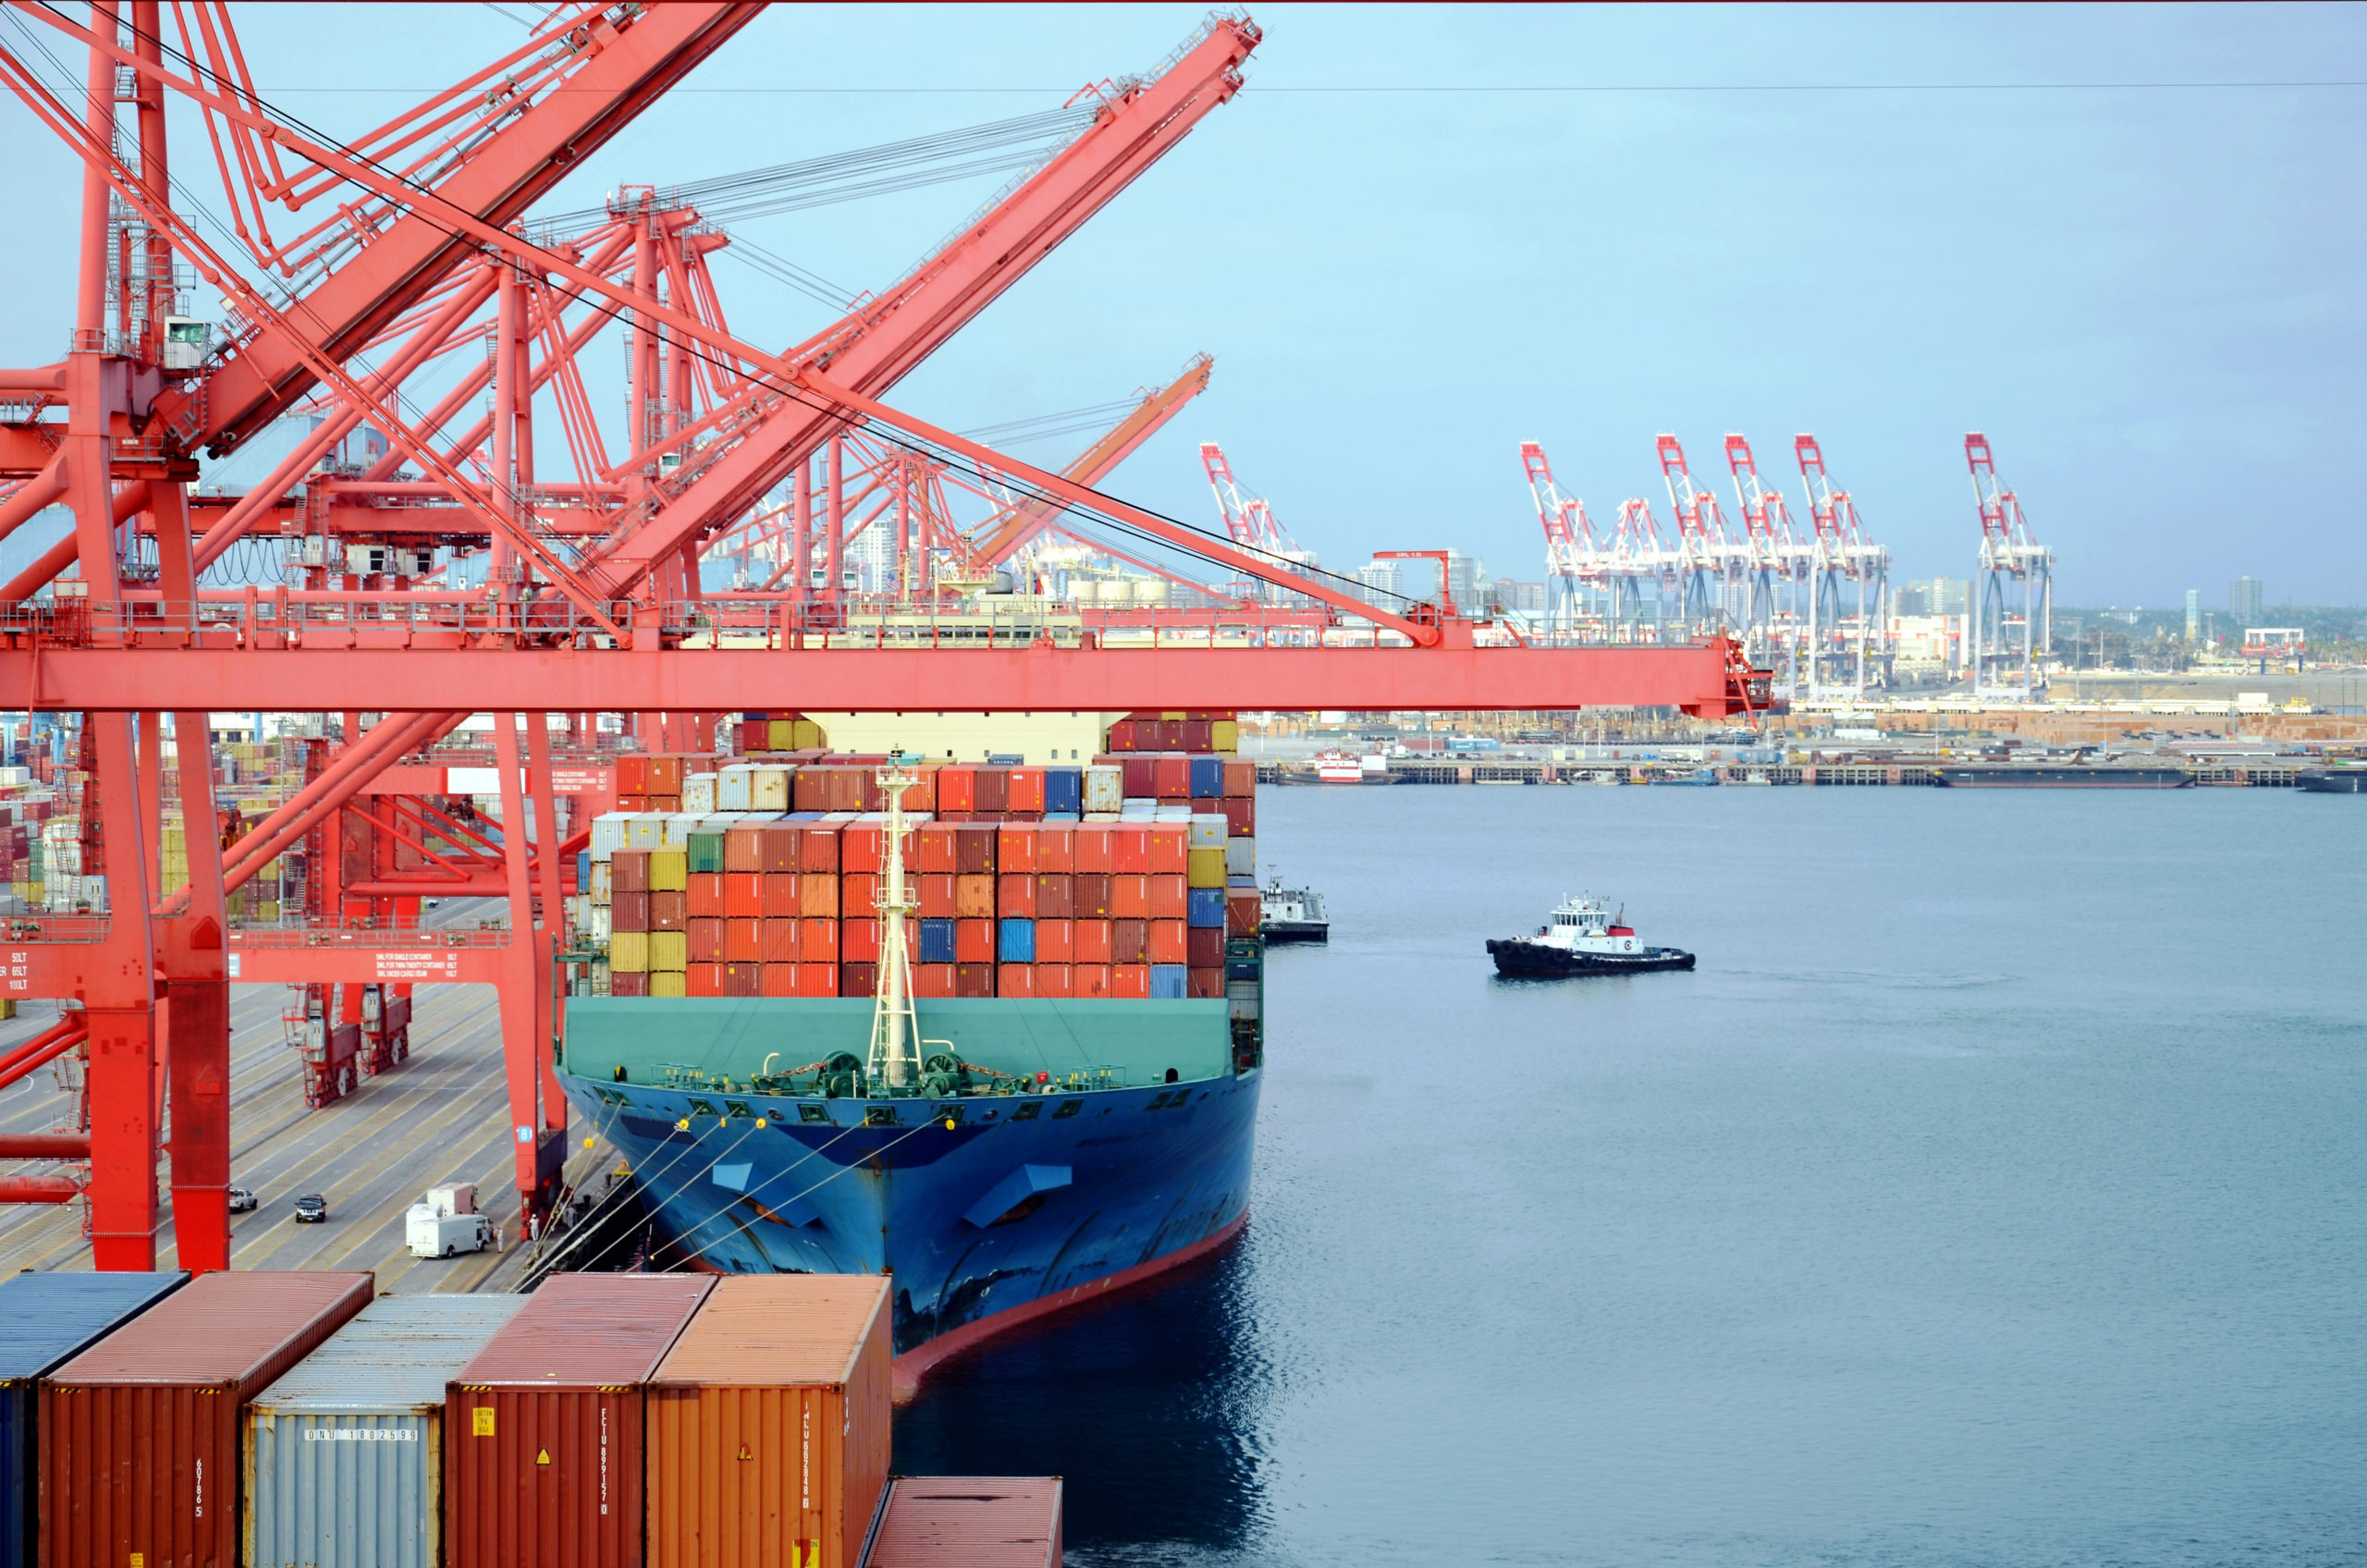 Vessel Buildup Grows at West Coast Ports | THE SHOP